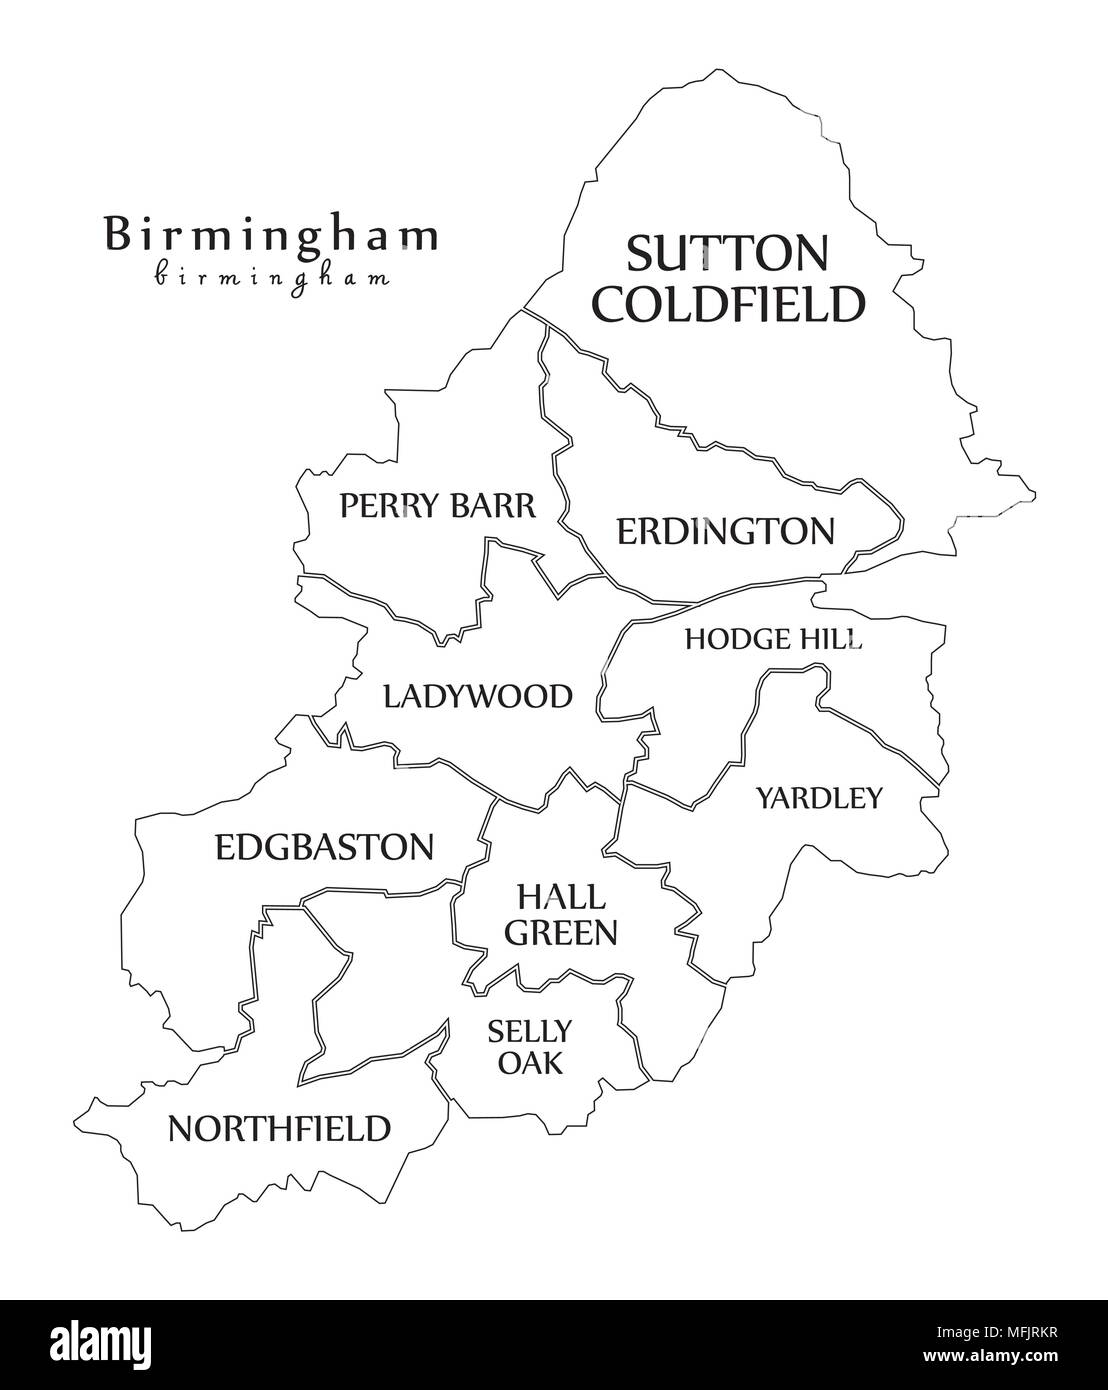 Città moderna mappa - Birmingham City of England con comuni e titoli del Regno Unito mappa di contorno Illustrazione Vettoriale